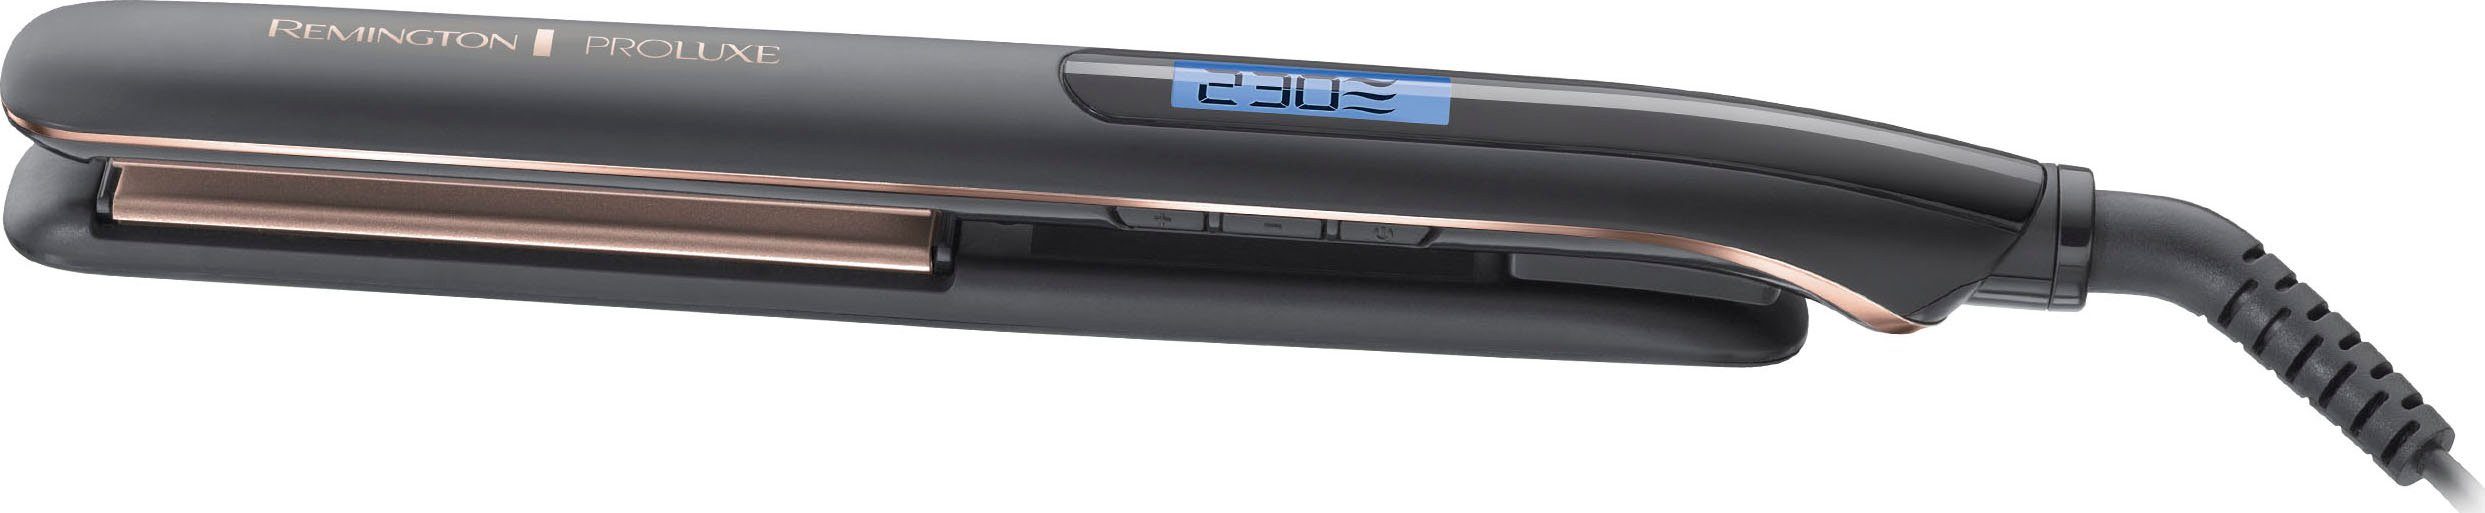 Remington Glätteisen S9100B E51 PROluxe Midnight Ultimate-Glide-Keramik- Beschichtung, OPTIheat-Technologie, 9 Temperatureinstellungen von 150-230  °C, 10 Sek. Aufheizzeit, Sicherheitsabschaltung, Aufbewahrungstasche